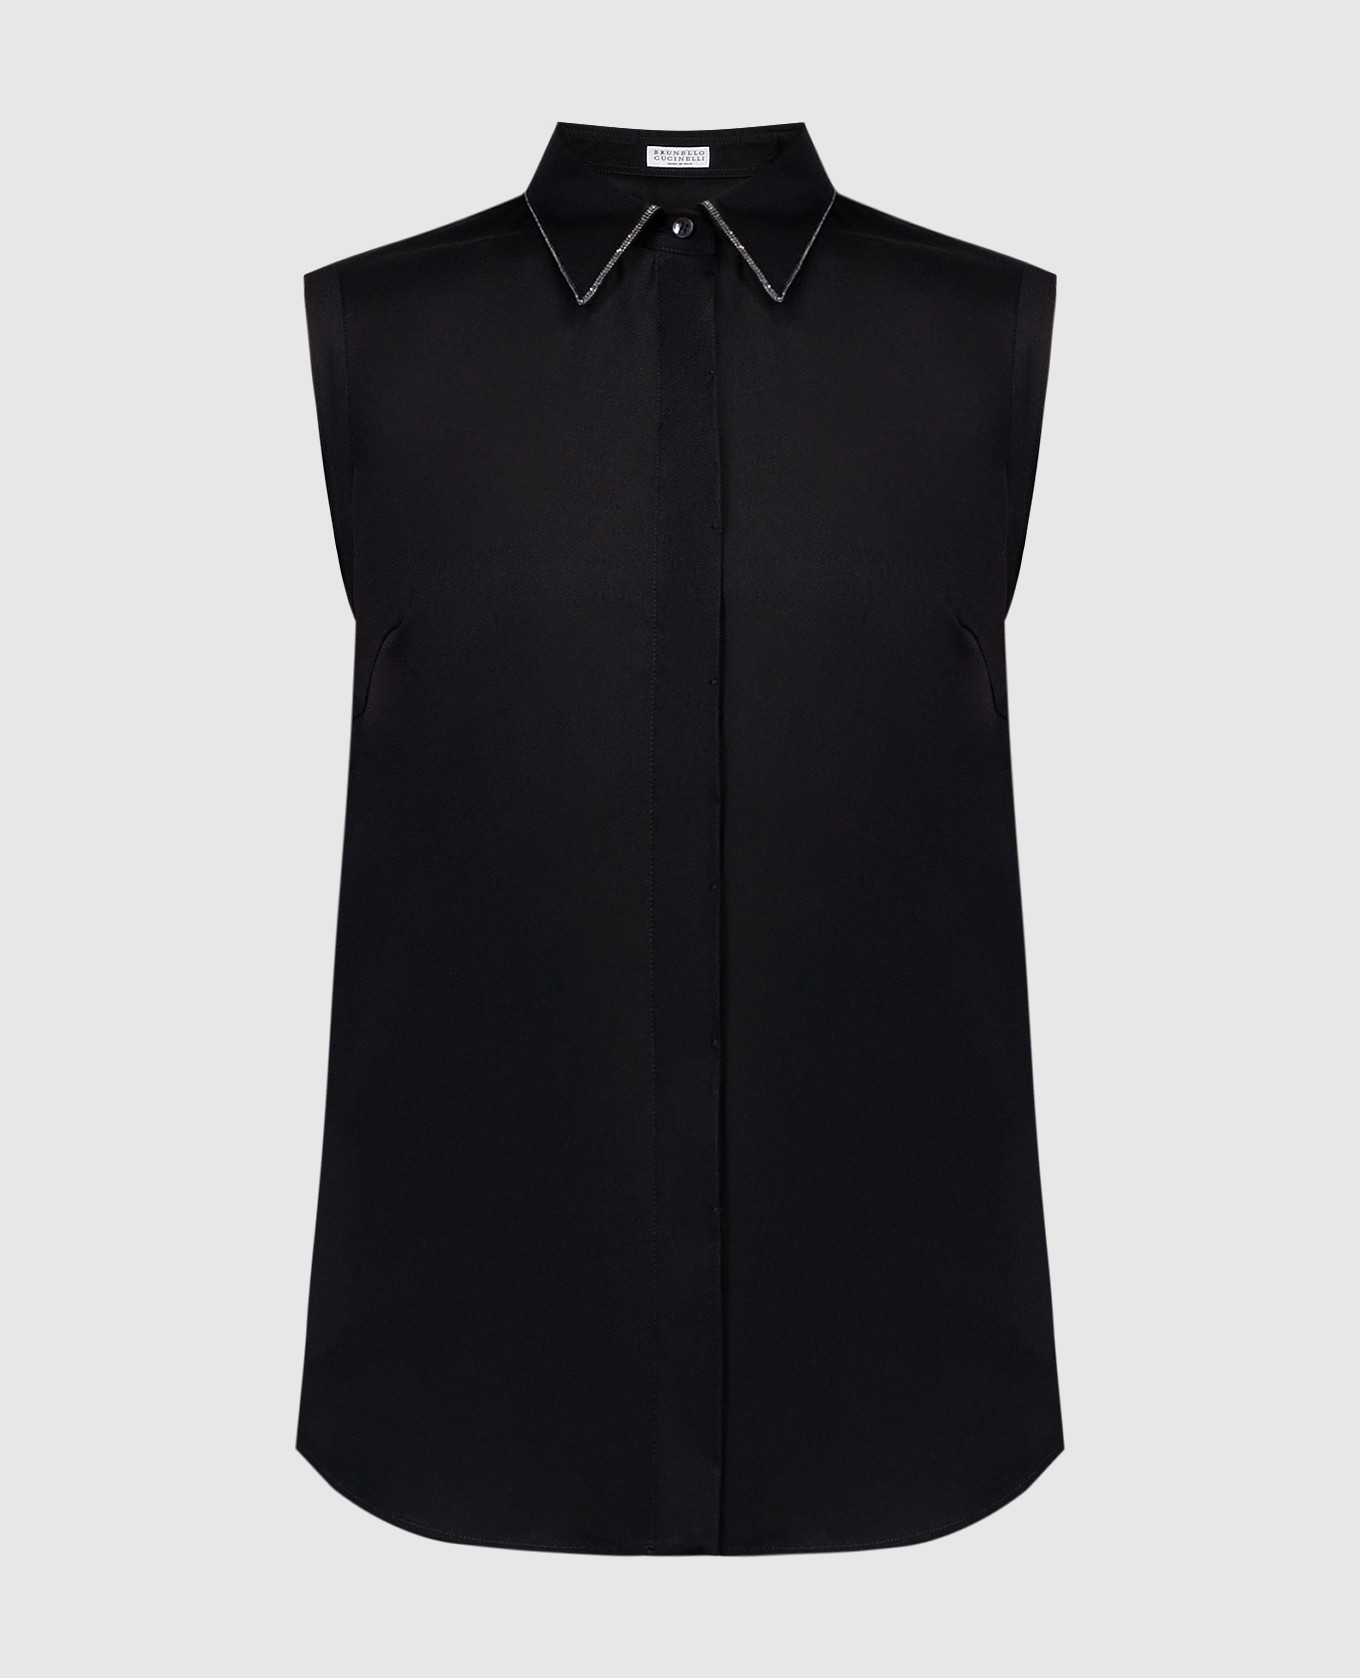 Черная блуза с цепочкой мониль с эколонуном.